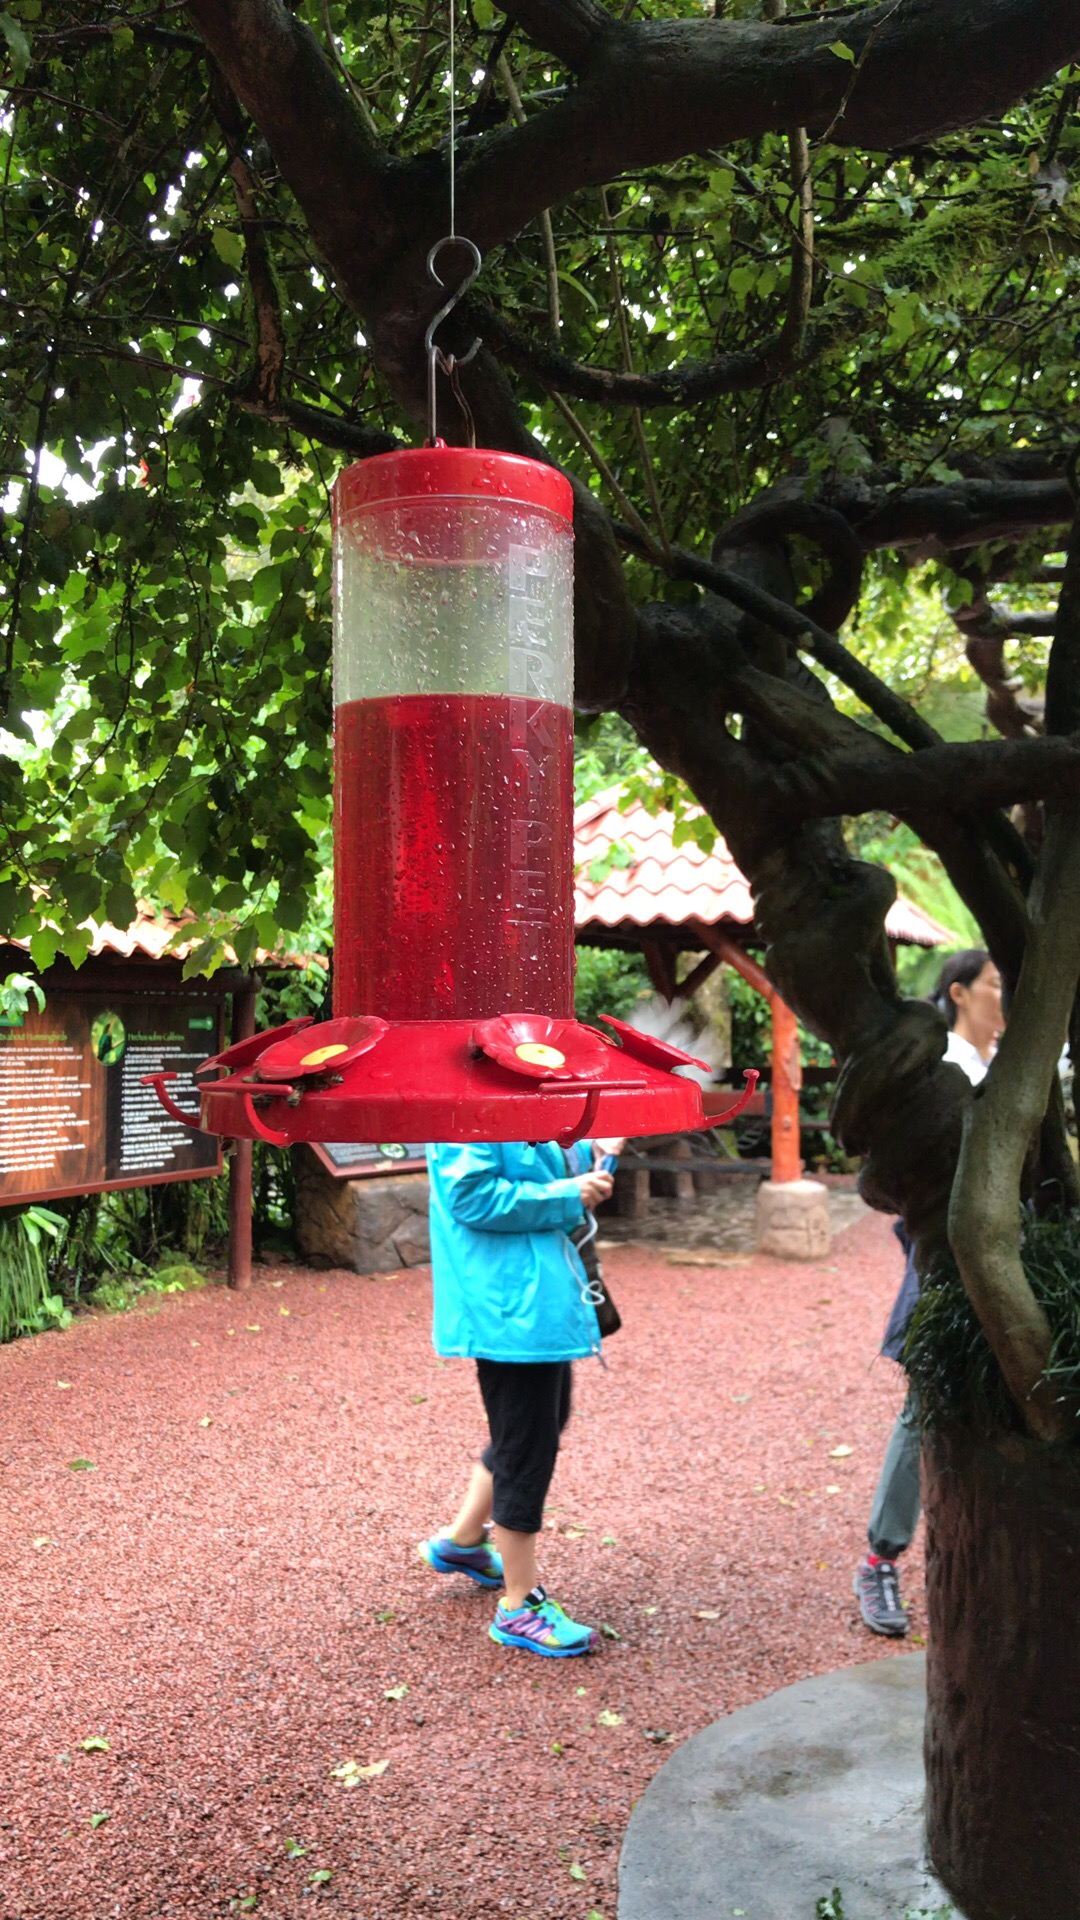 【哥斯达黎加旅游】和平瀑布花园 看蜂鸟吸蜜 可爱的小生命！  🌟专注提供秘鲁及中南美国家中英文线路游